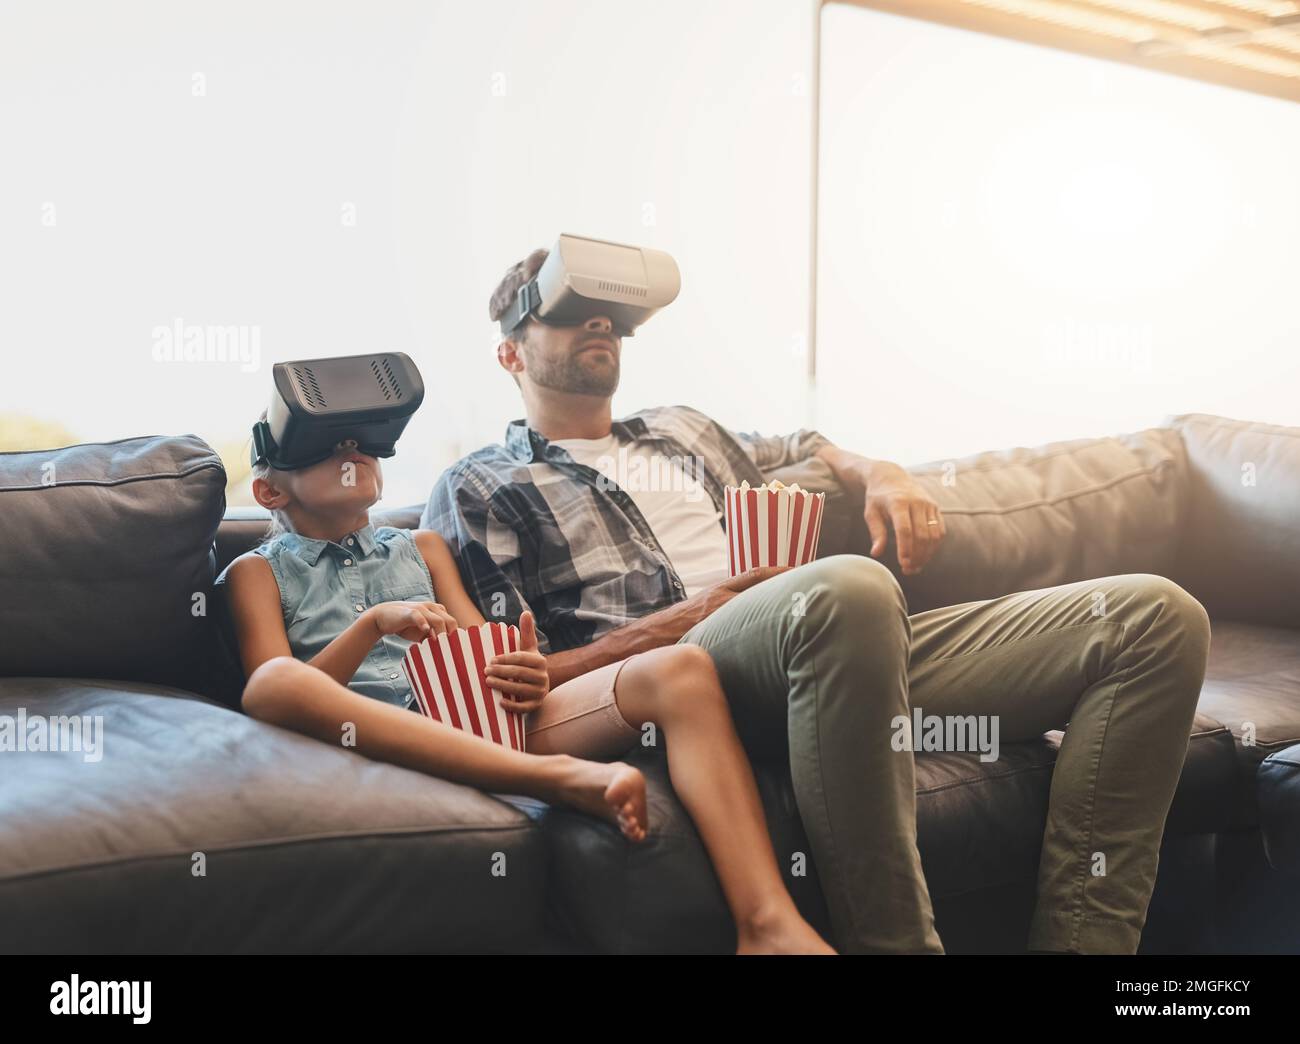 Simulation des Kinoerlebnisses. Ein Vater und eine Tochter essen Popcorn und sehen sich mit Virtual-Reality-Headsets zu Hause Filme an. Stockfoto